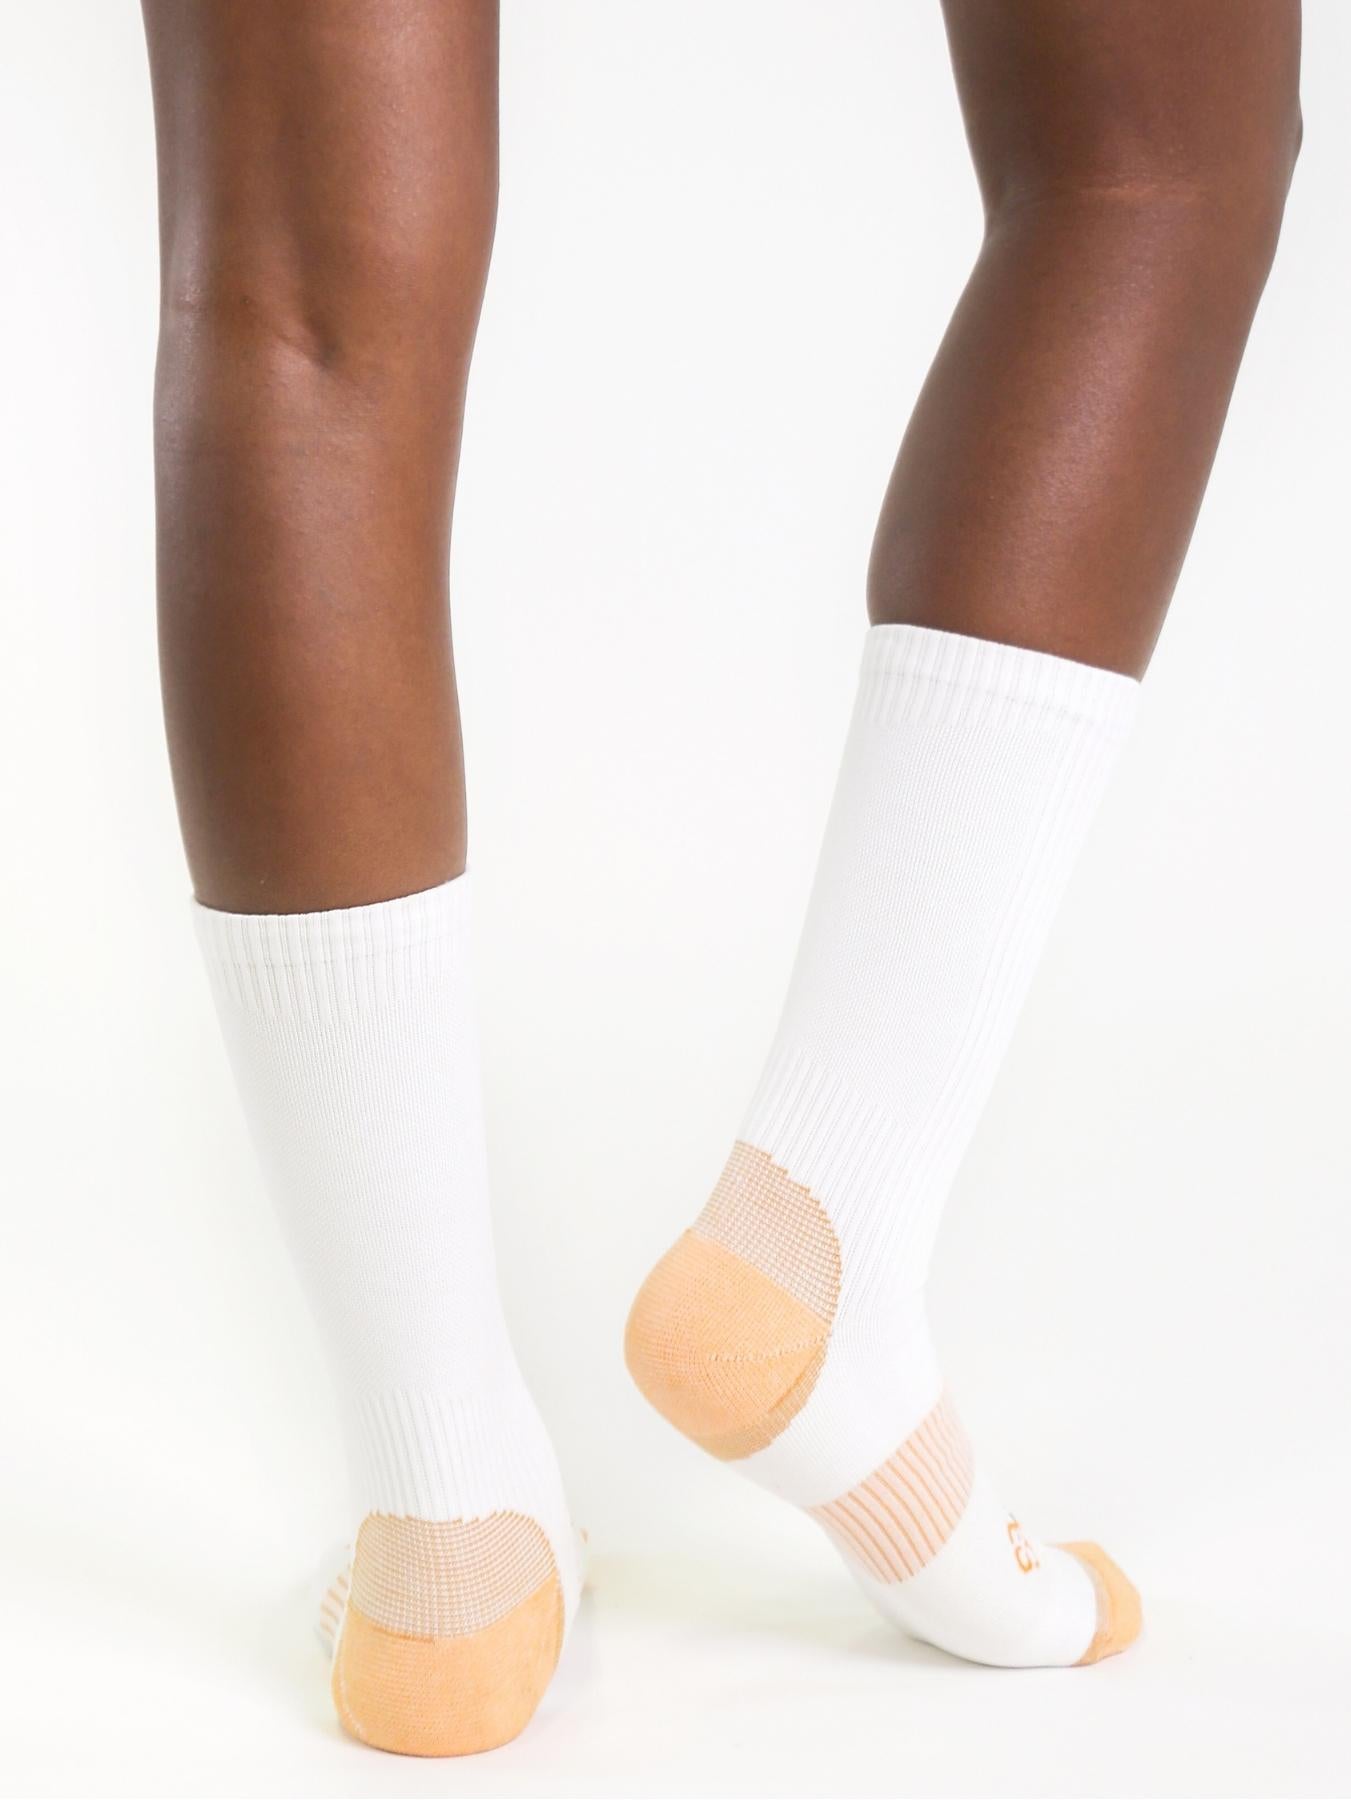 Copper Compression Mid Calf Socks (White) - Ladies